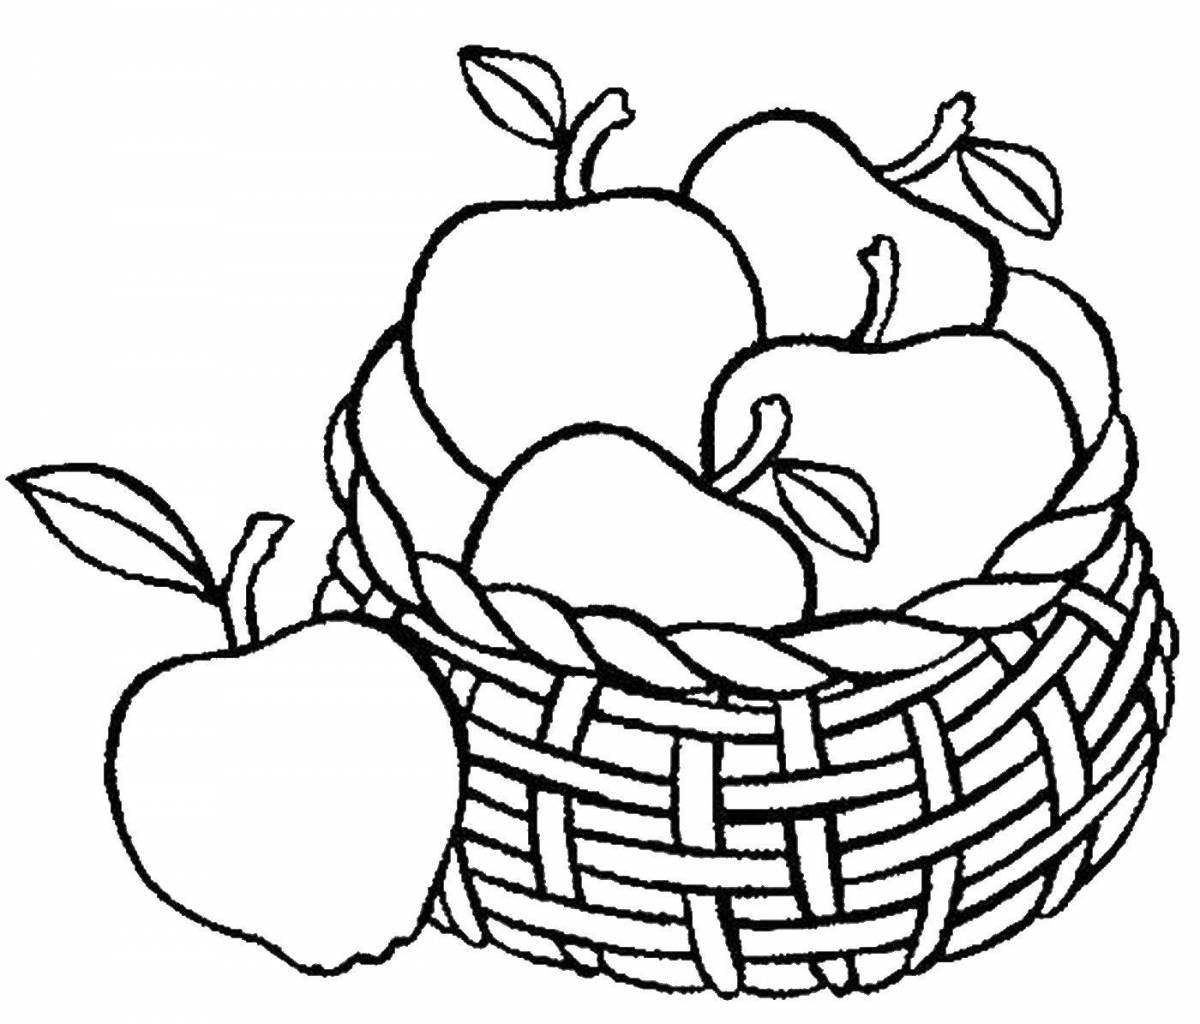 Феерический натюрморт из овощей и фруктов для детей